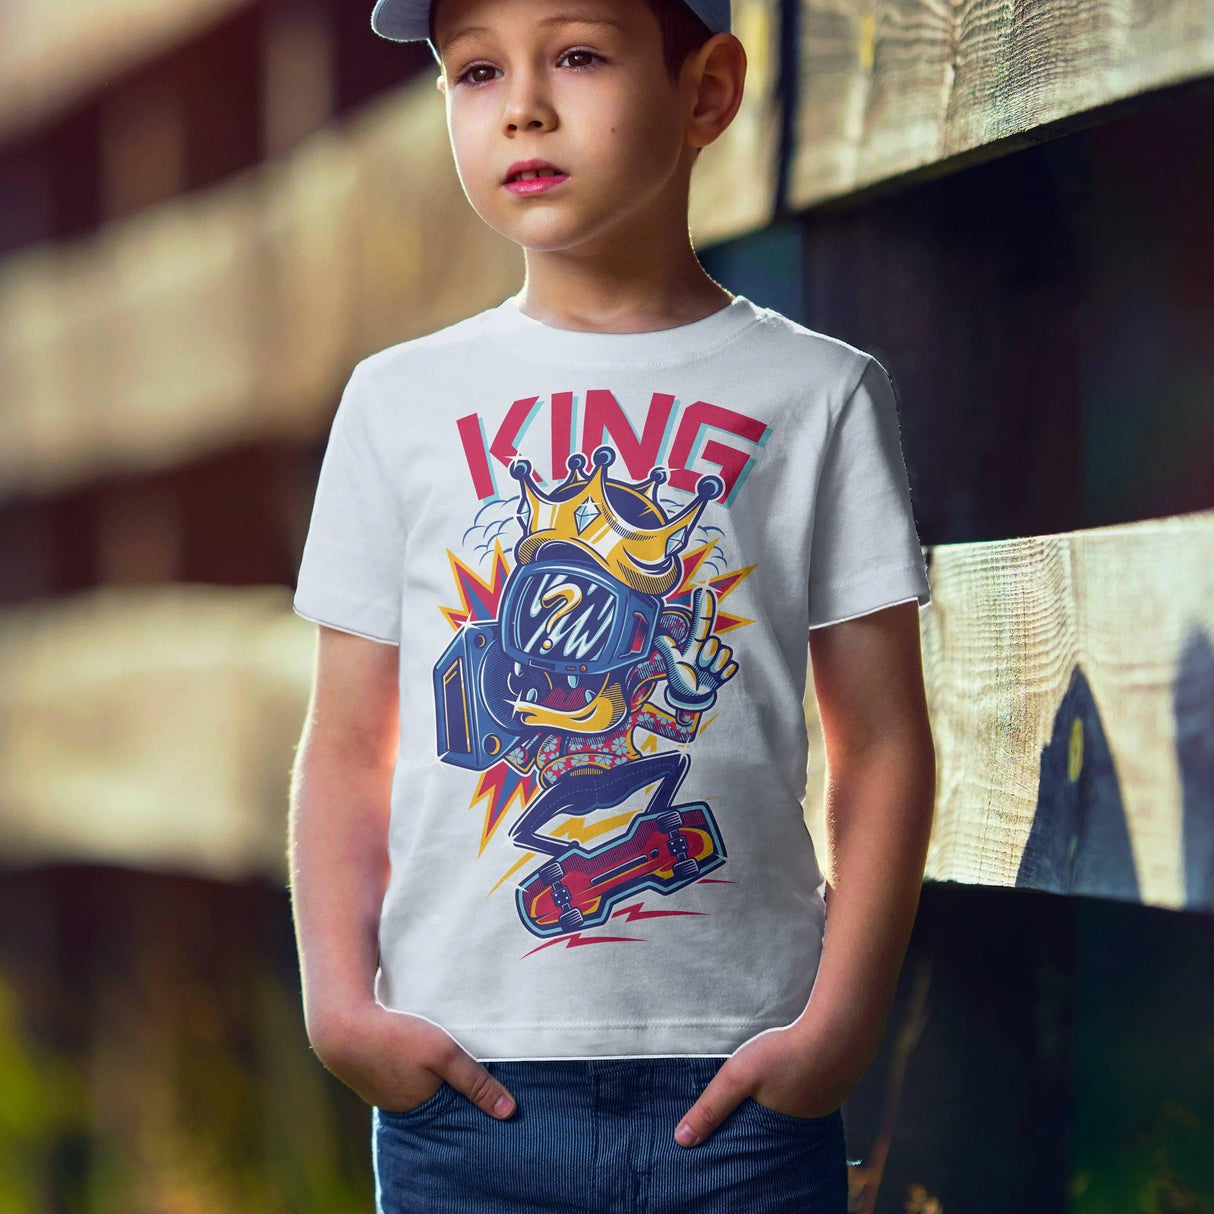 Custom Shirt, Custom T-shirt,custom Photo Shirt,personalized Shirt, Custom  Printing T-shirt,make Your Own Shirt,personalized Kids Shirt 